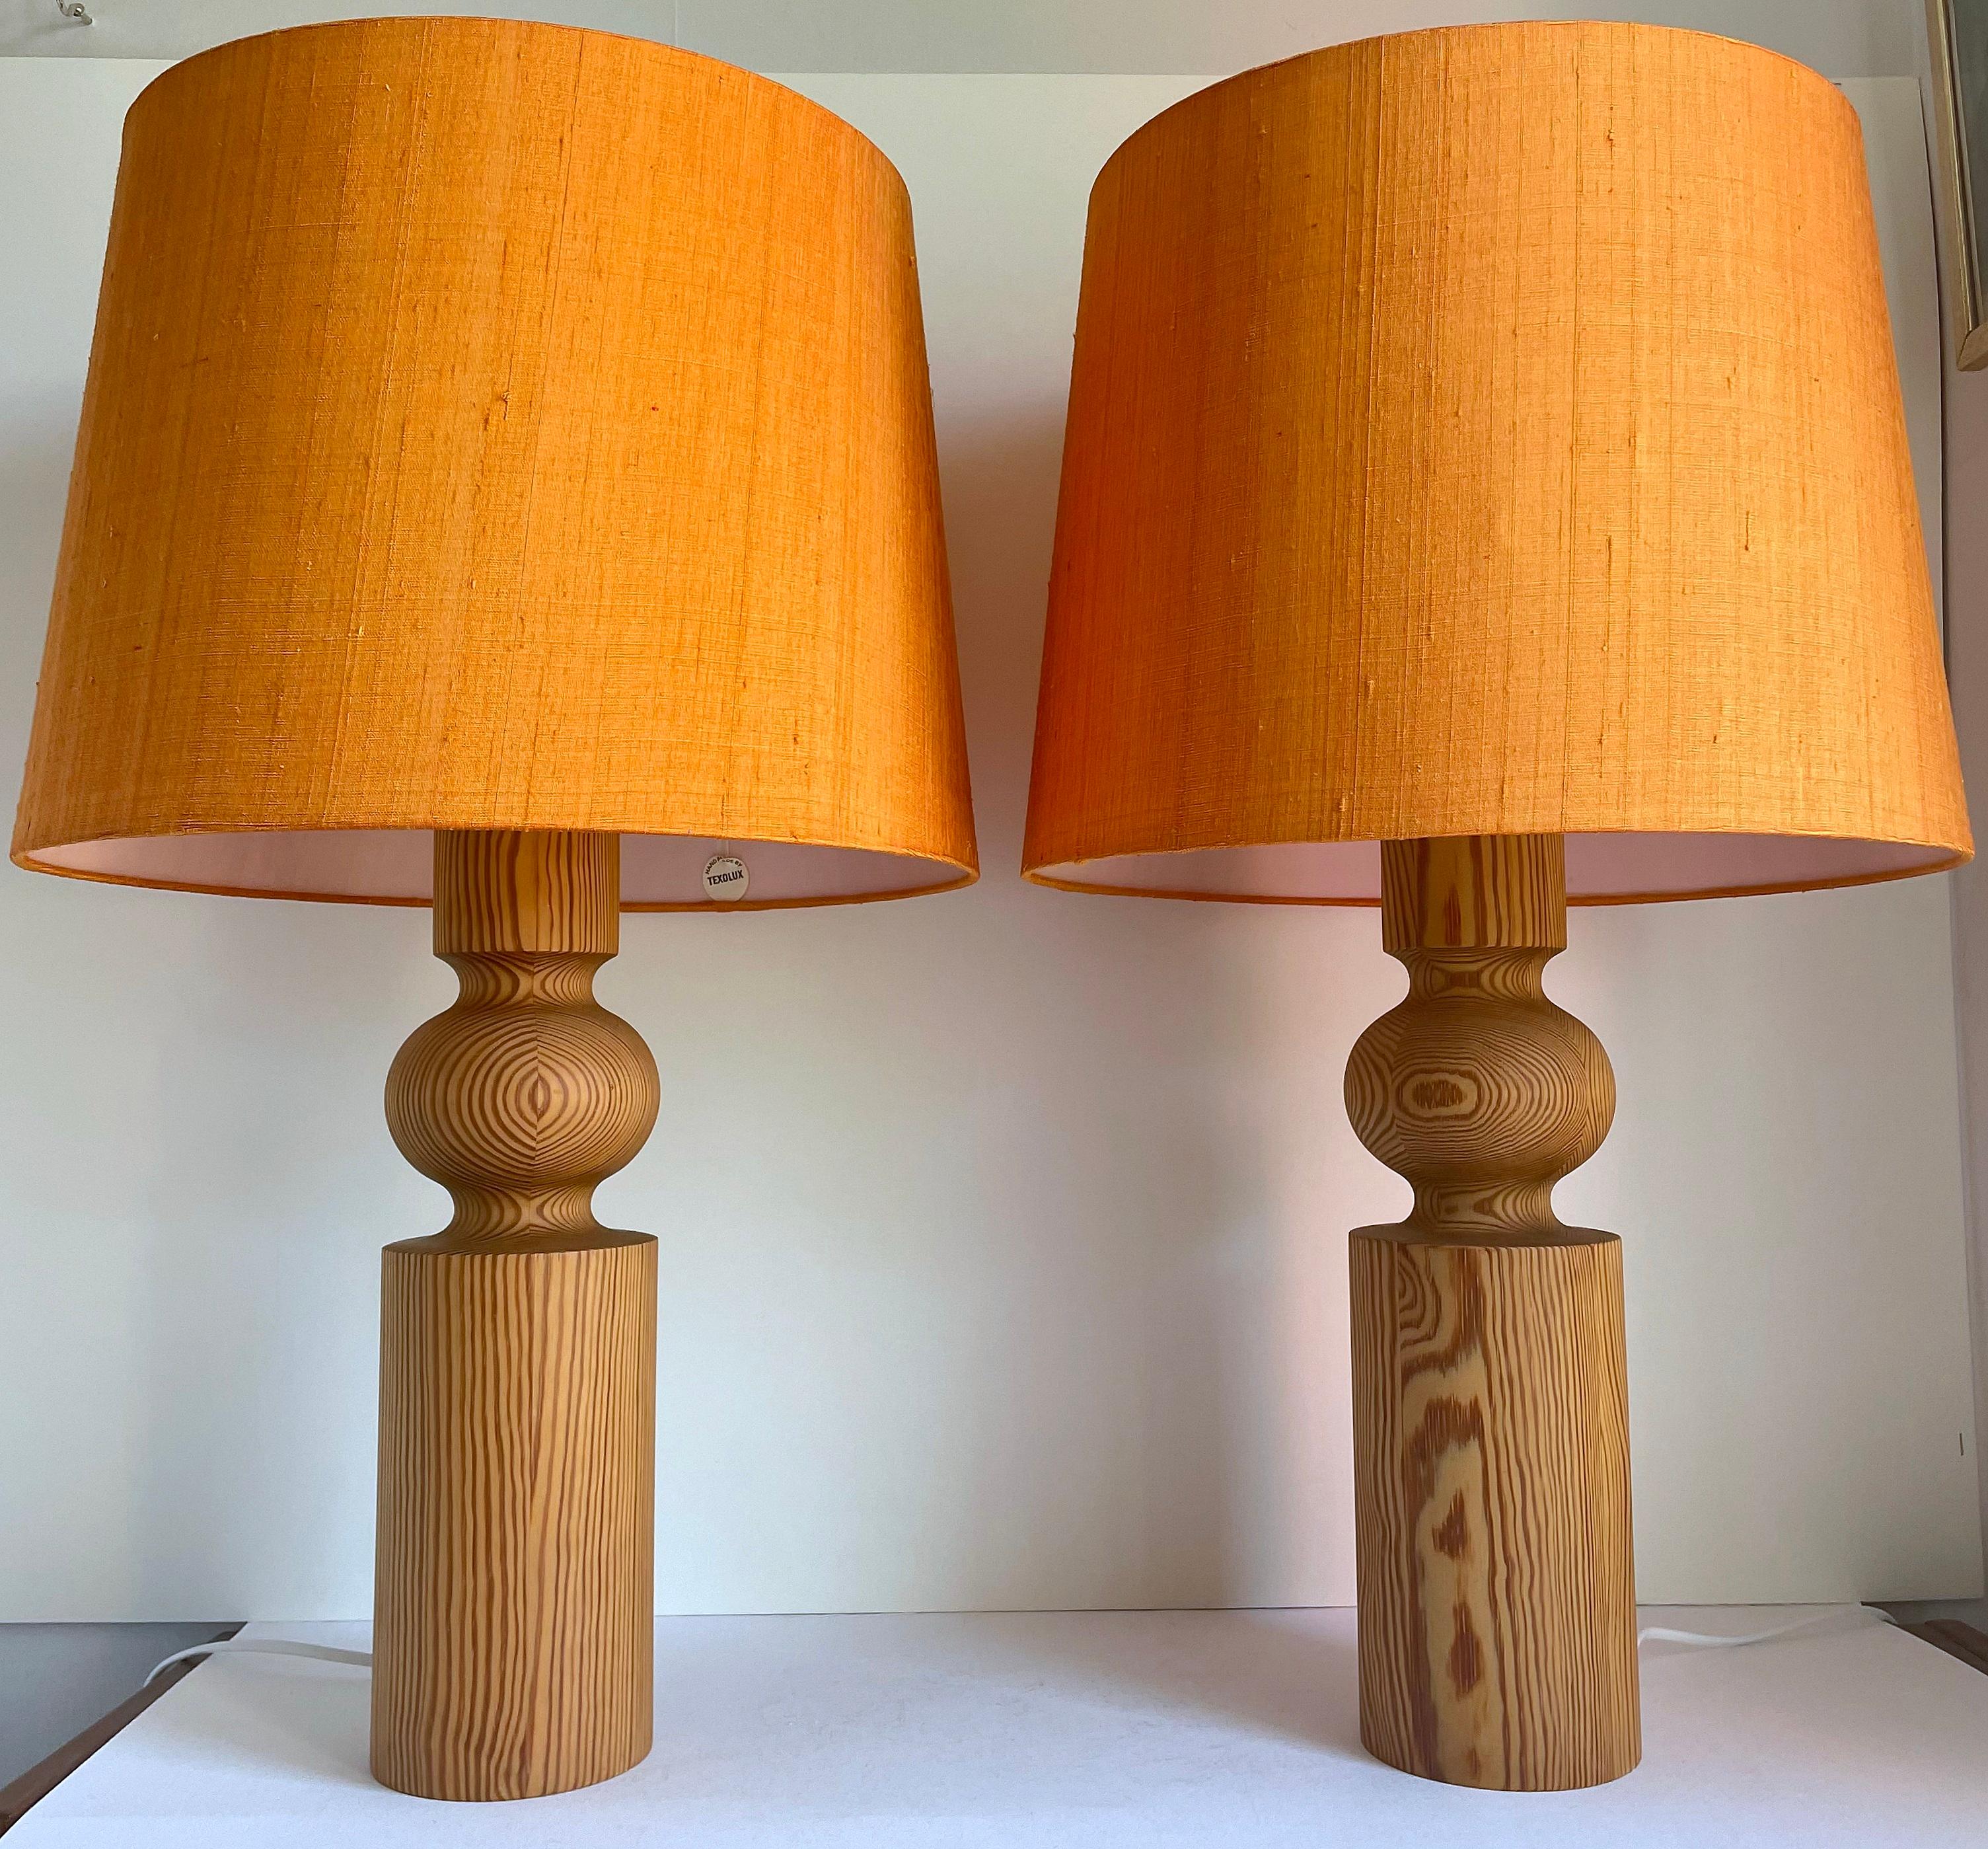 Paire de grandes lampes de table sculpturales en pin massif conçues par Uno Kristiansson vers 1966 et fabriquées par Luxus. Le site  Le corps du modèle est en bois de pin tourné. Des diffuseurs en acrylique blanc surmontent les lampes et des